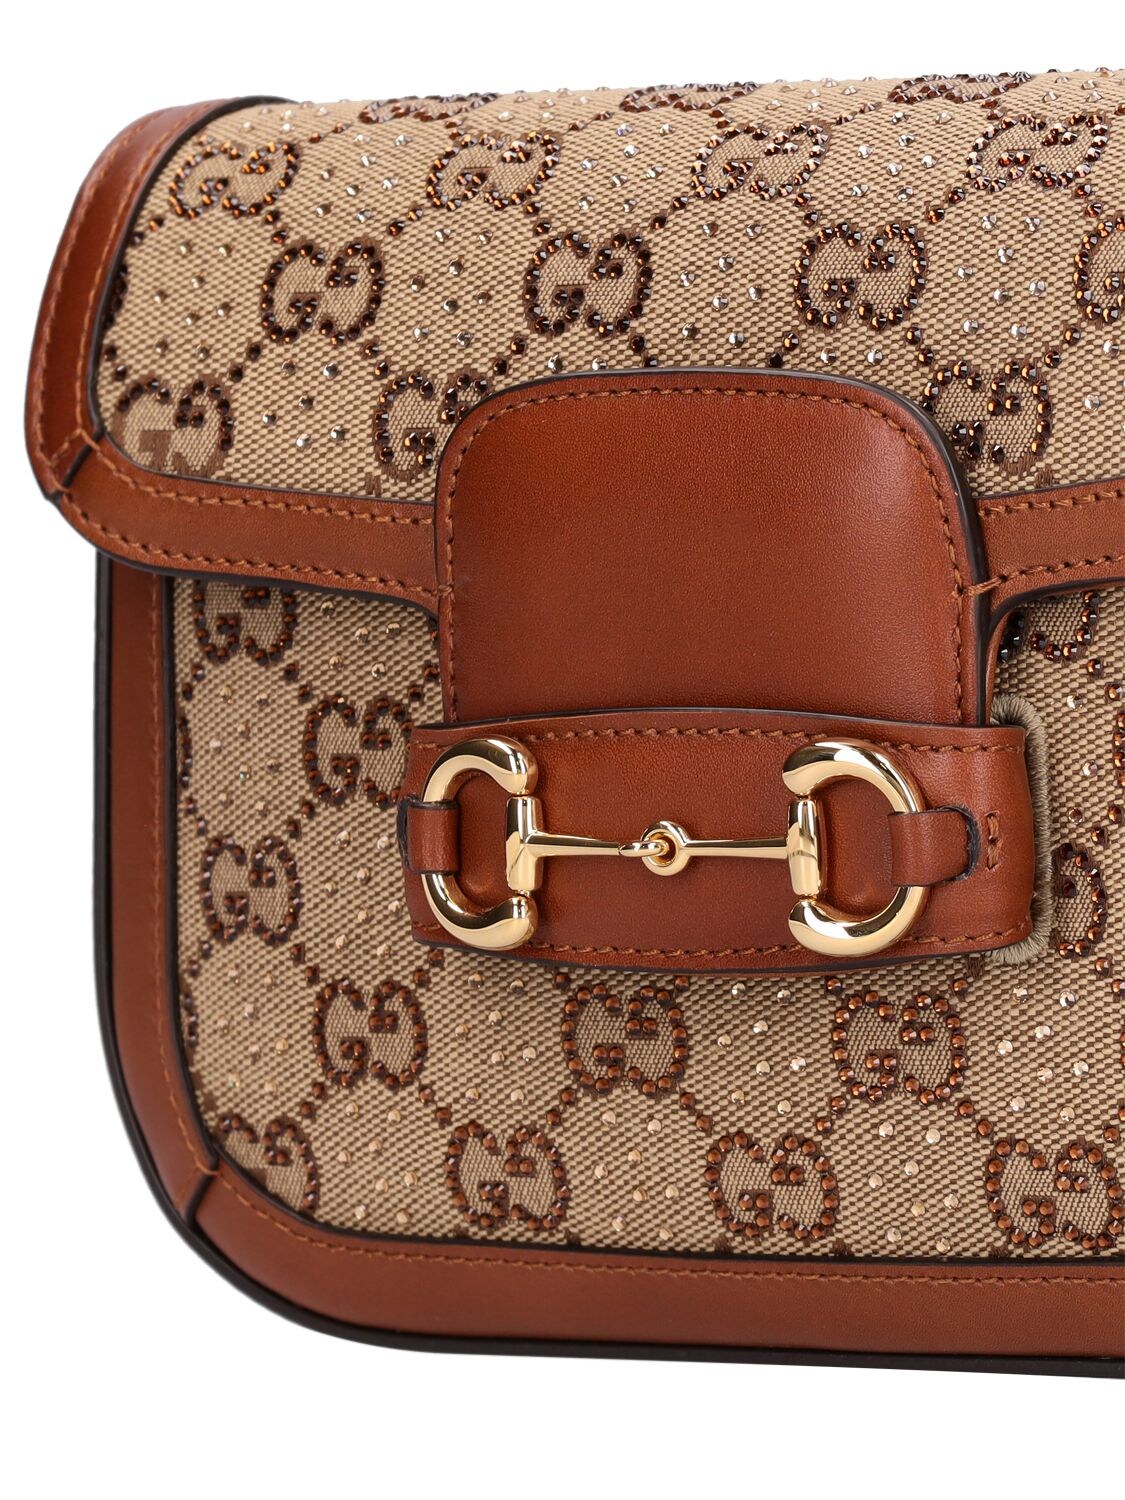 Gucci GG Canvas Horsebit Bag 602204